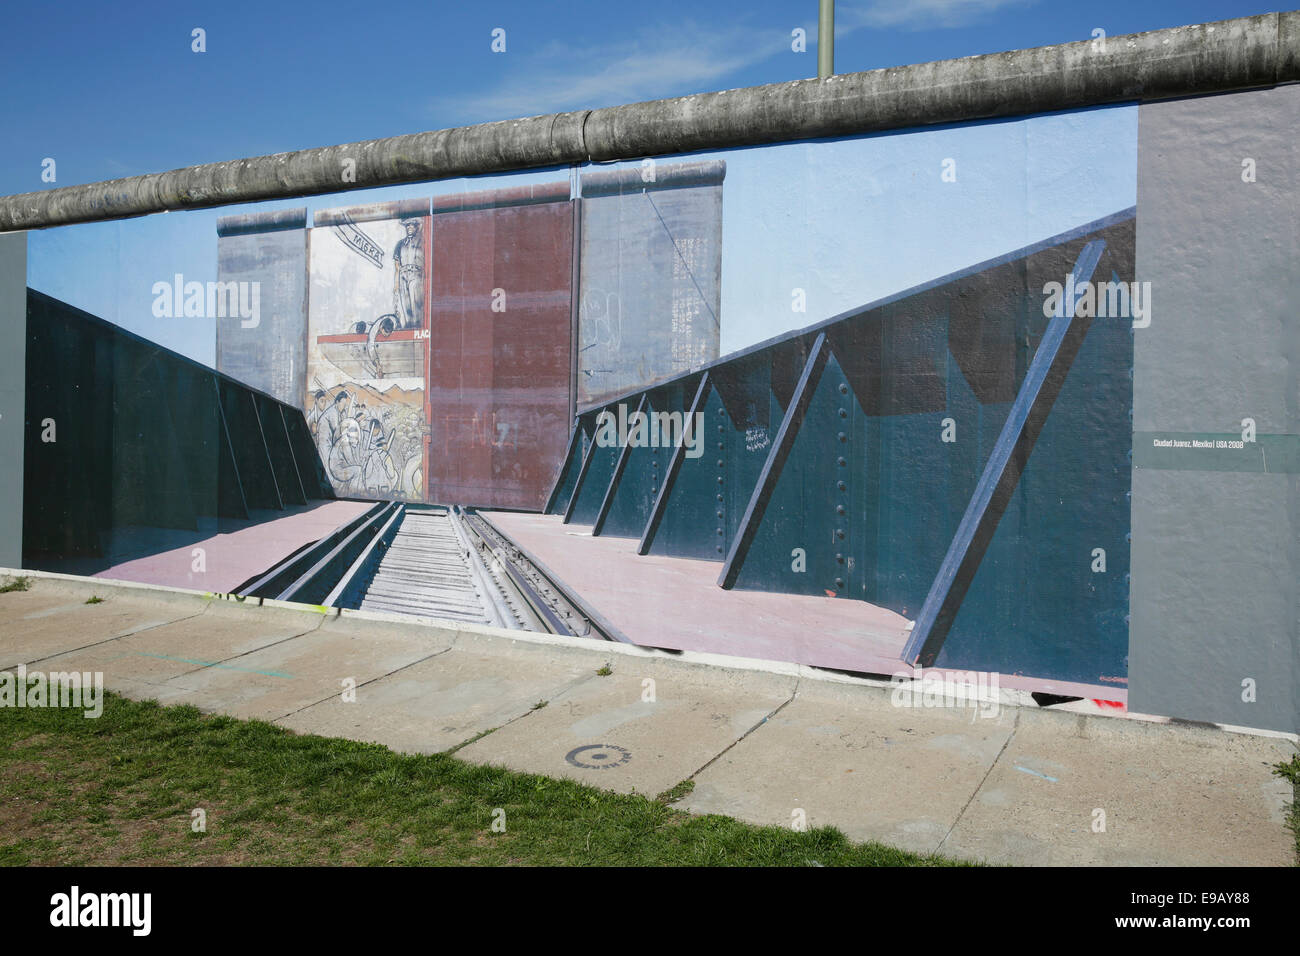 Exposition de photos sur le côté donnant sur la rivière Spree, vestiges du Mur de Berlin, East Side Gallery, Berlin, Allemagne Banque D'Images